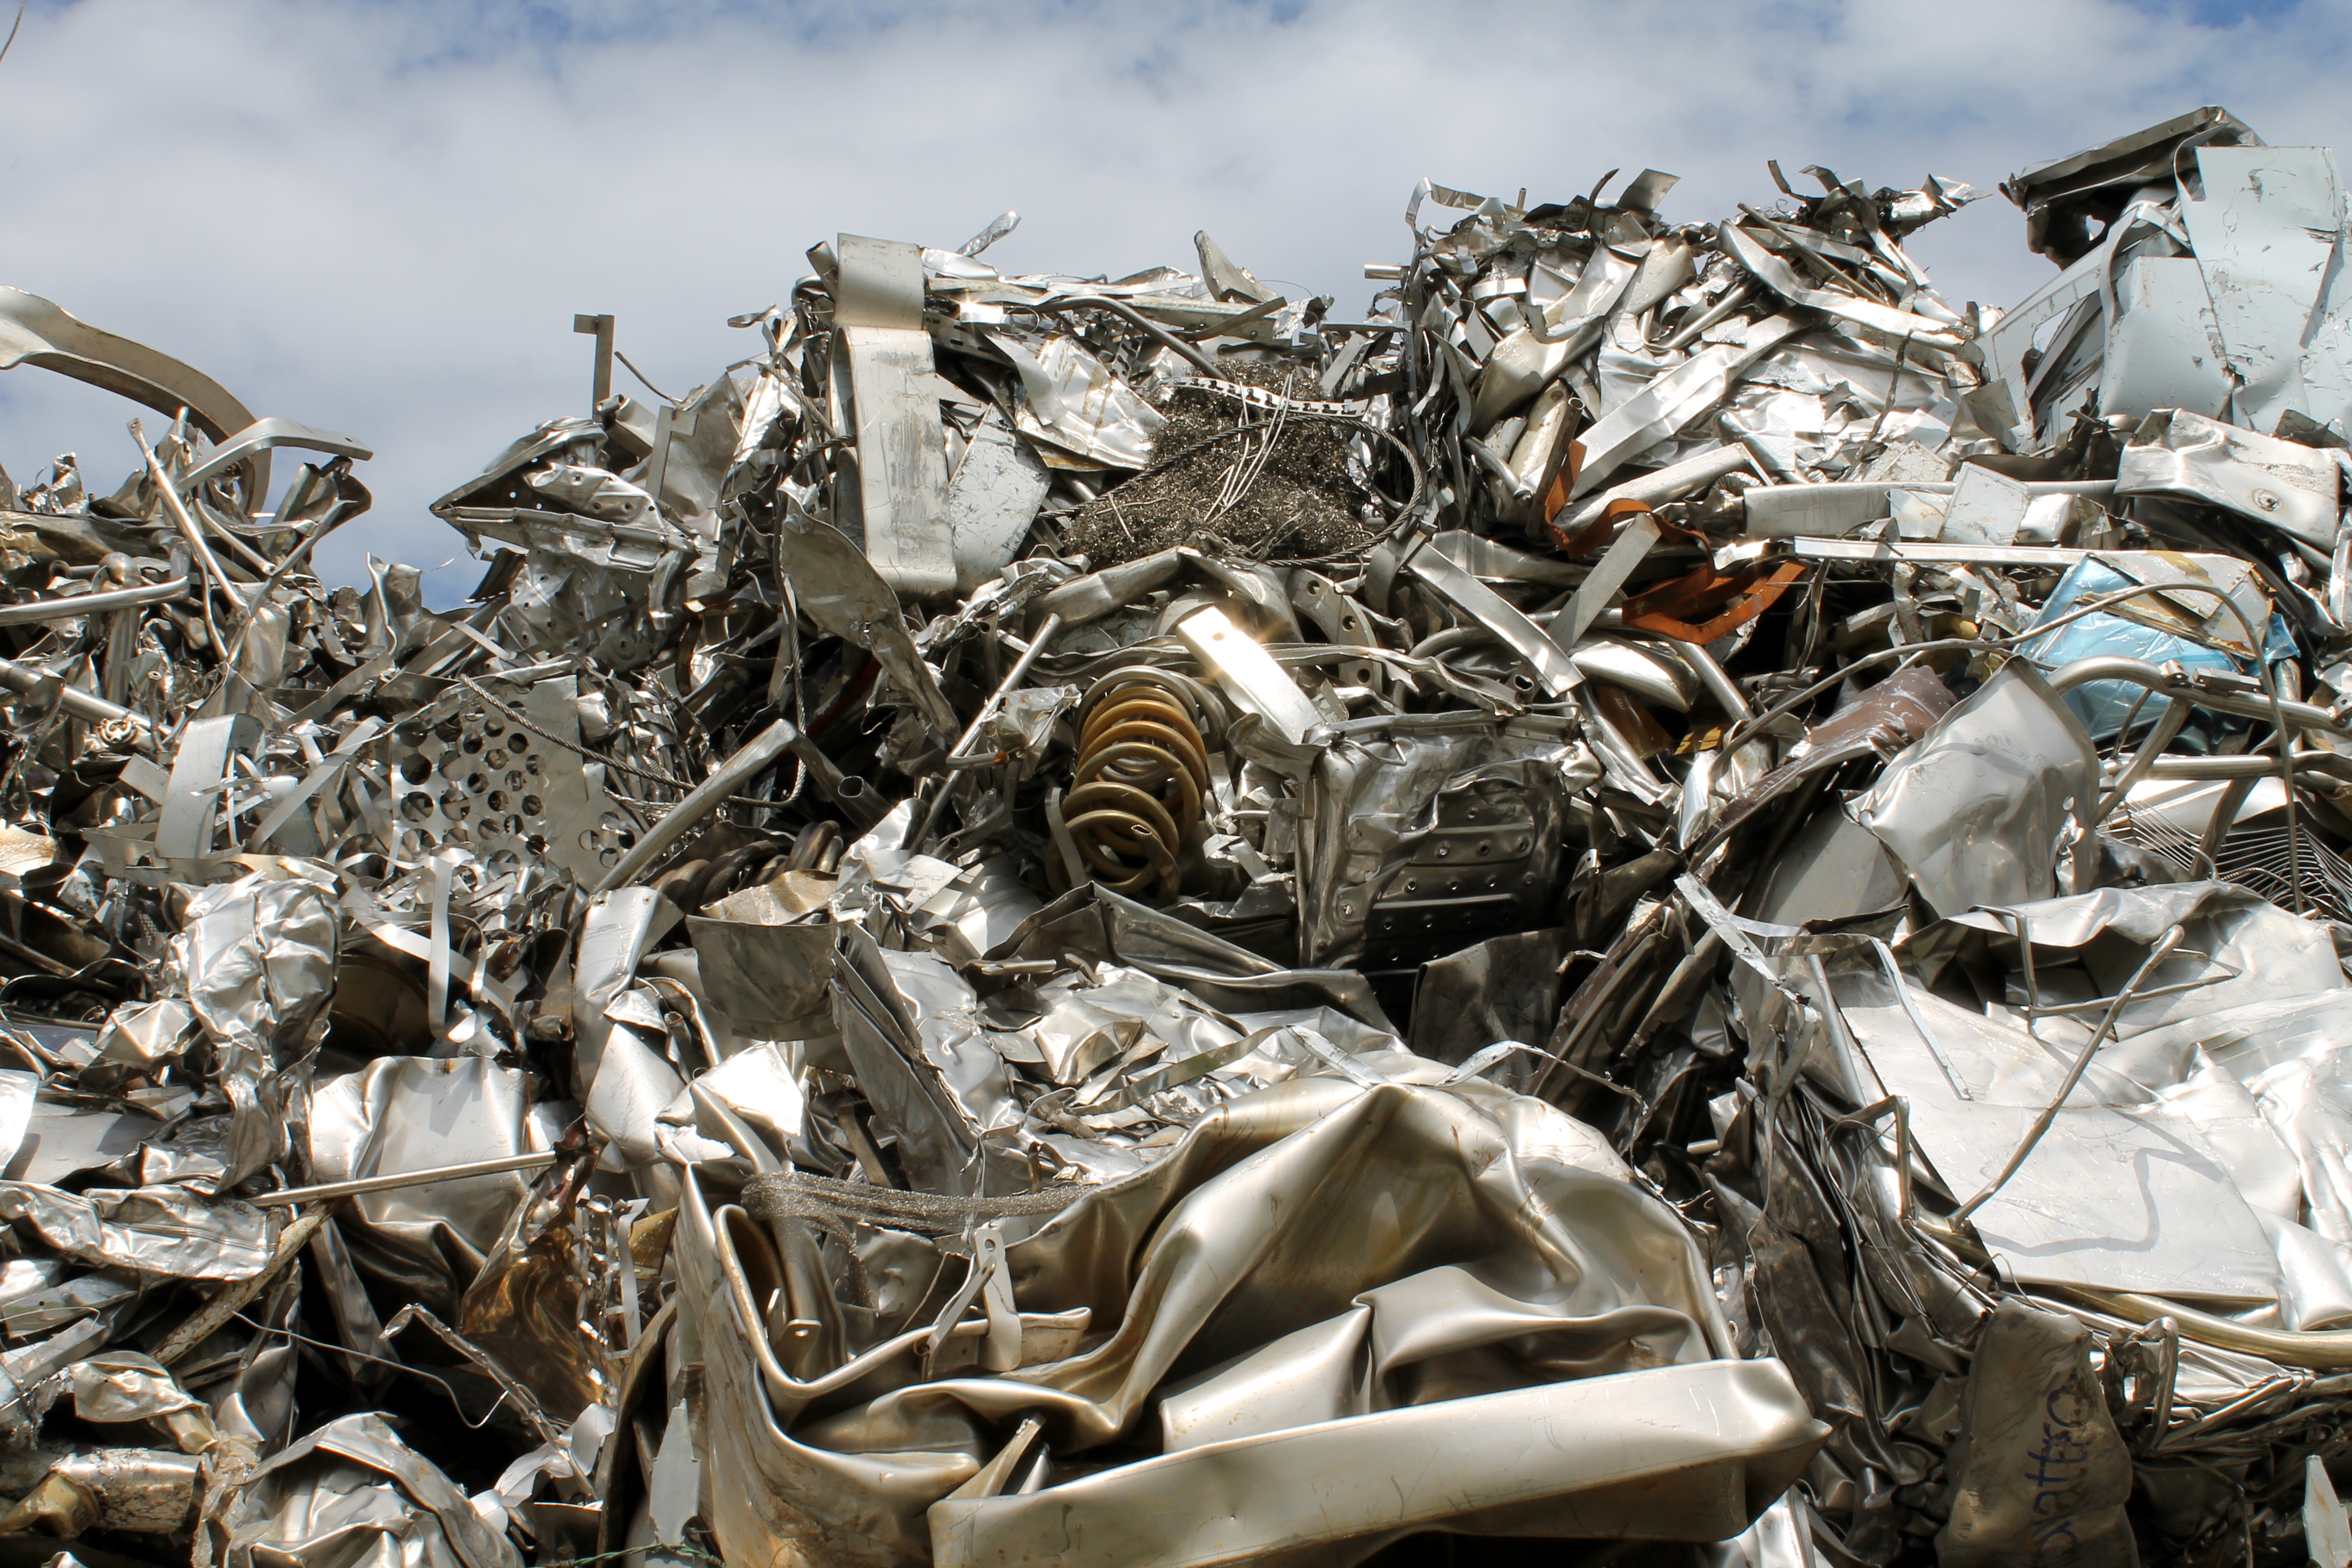 Scrap Car Metal in Pile